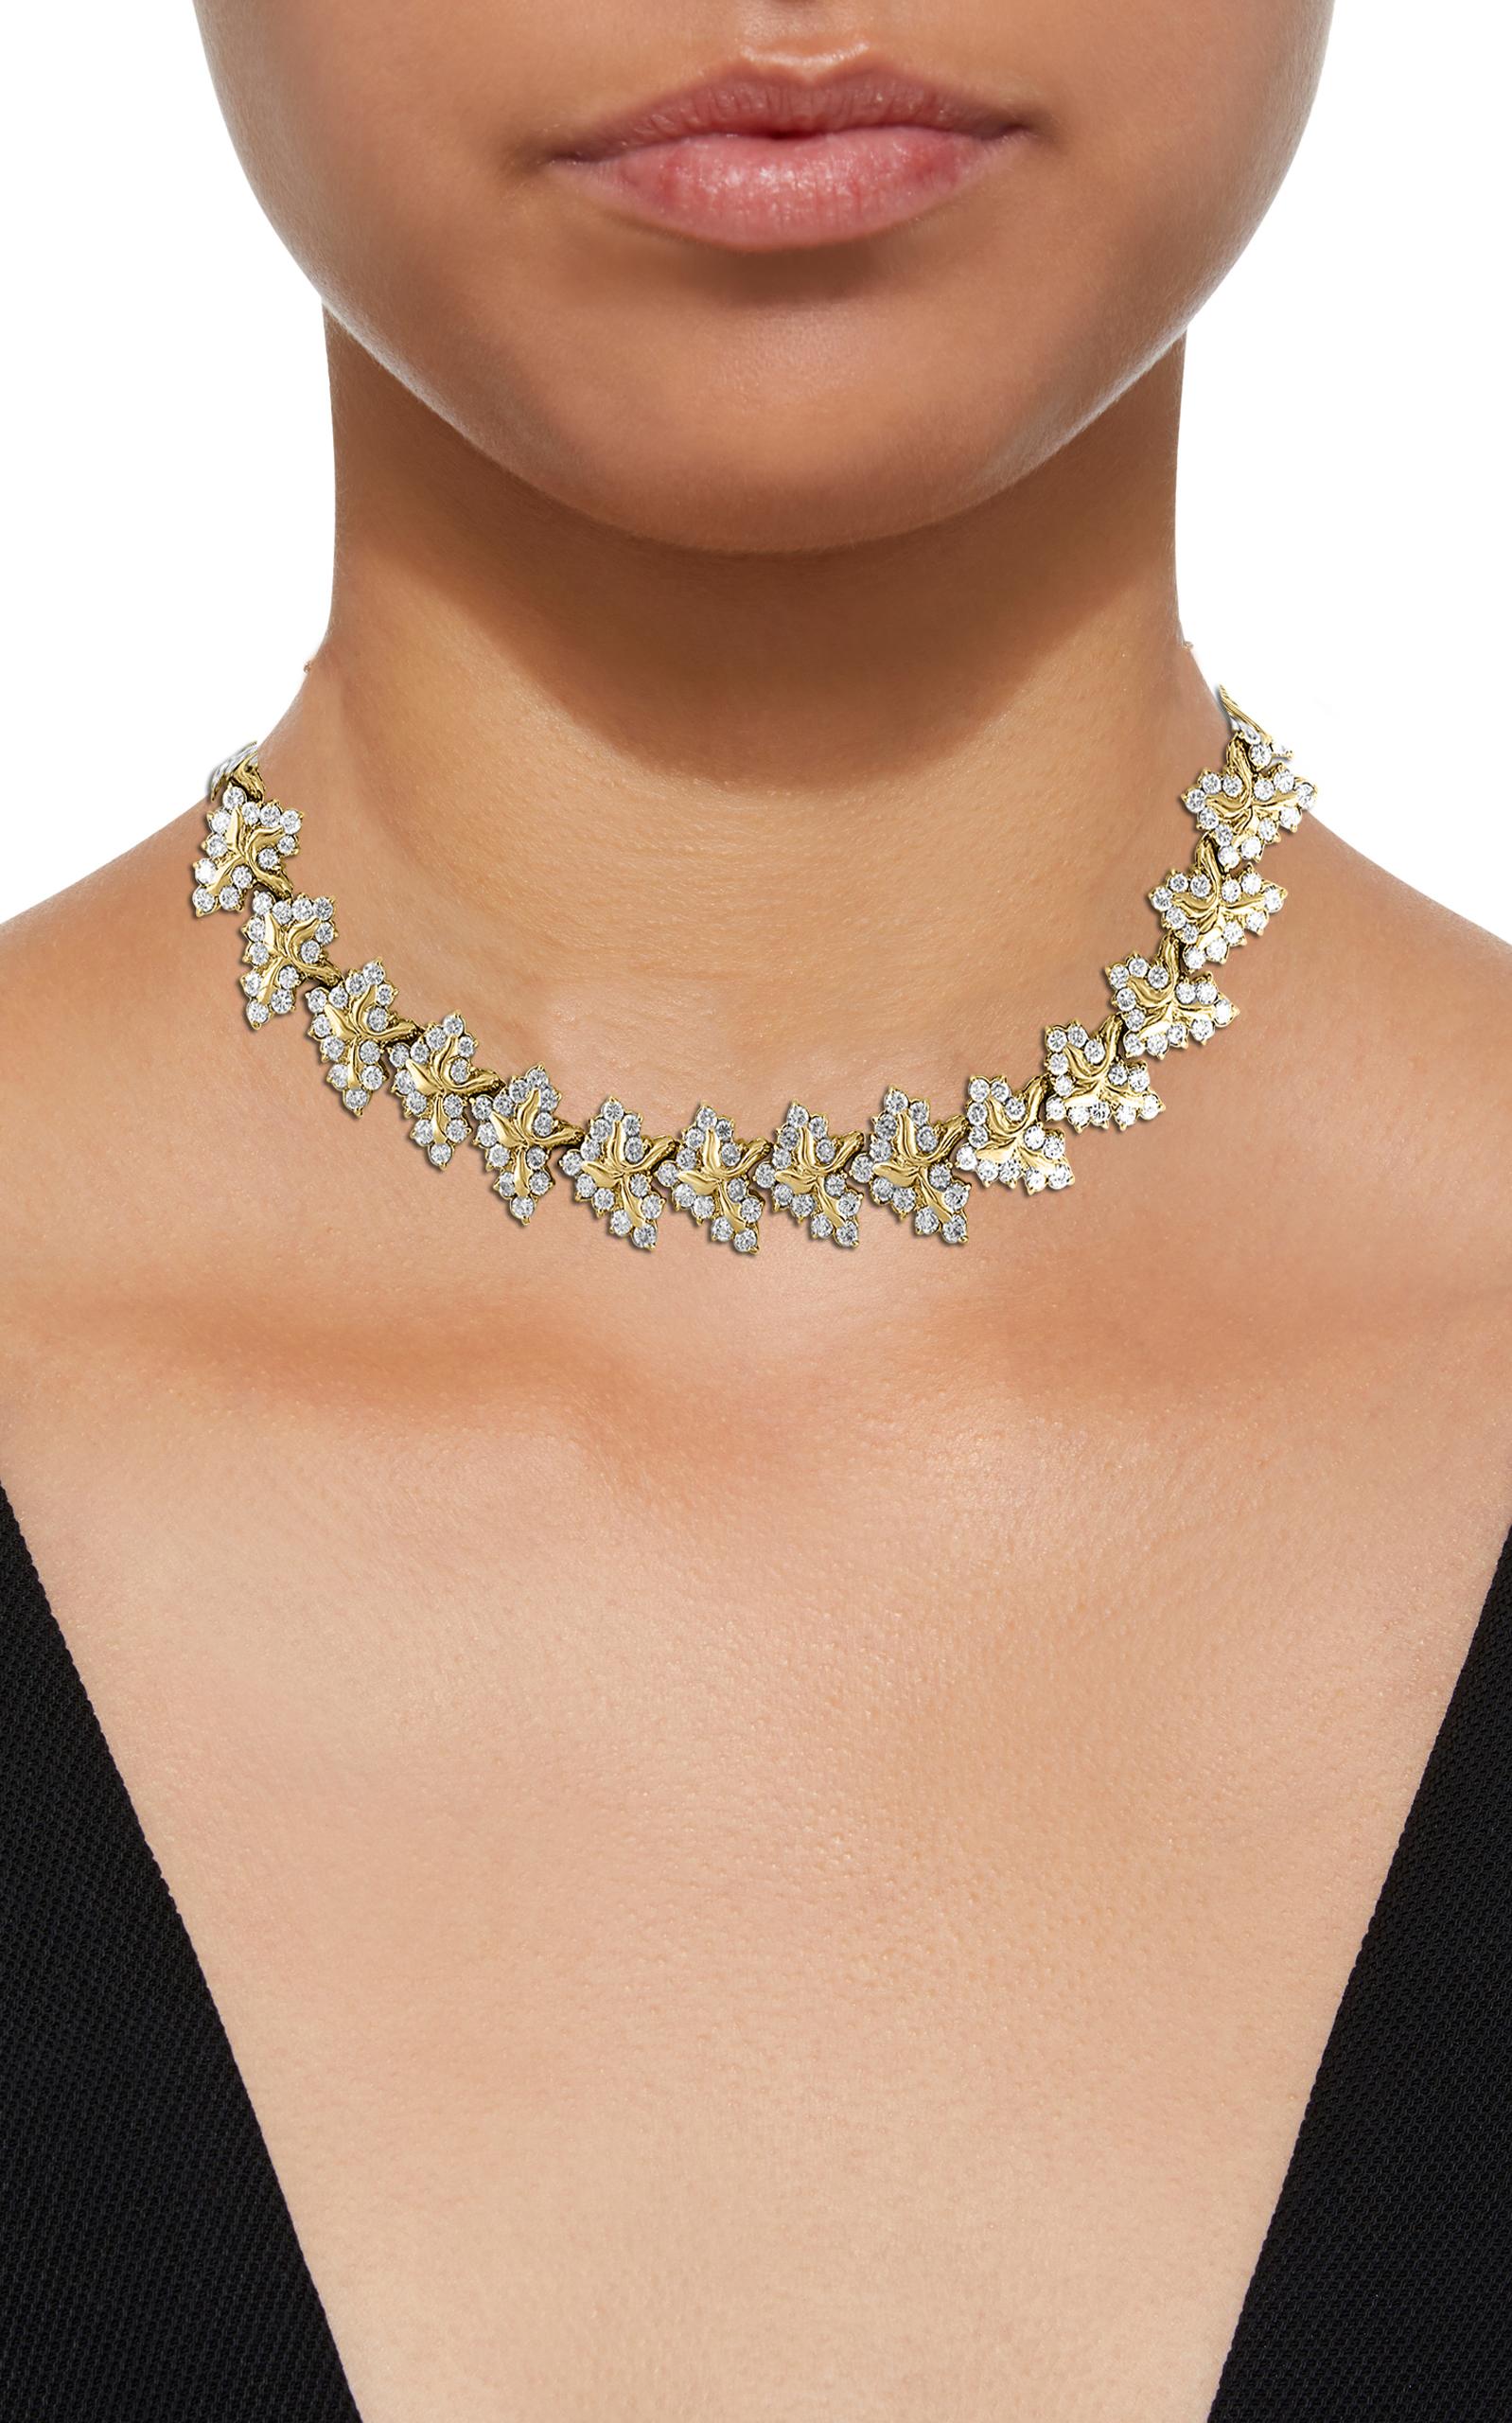 38 Carat Diamond Necklace and Bracelet 180 Grams 14 Karat Gold Bridal Suite For Sale 2